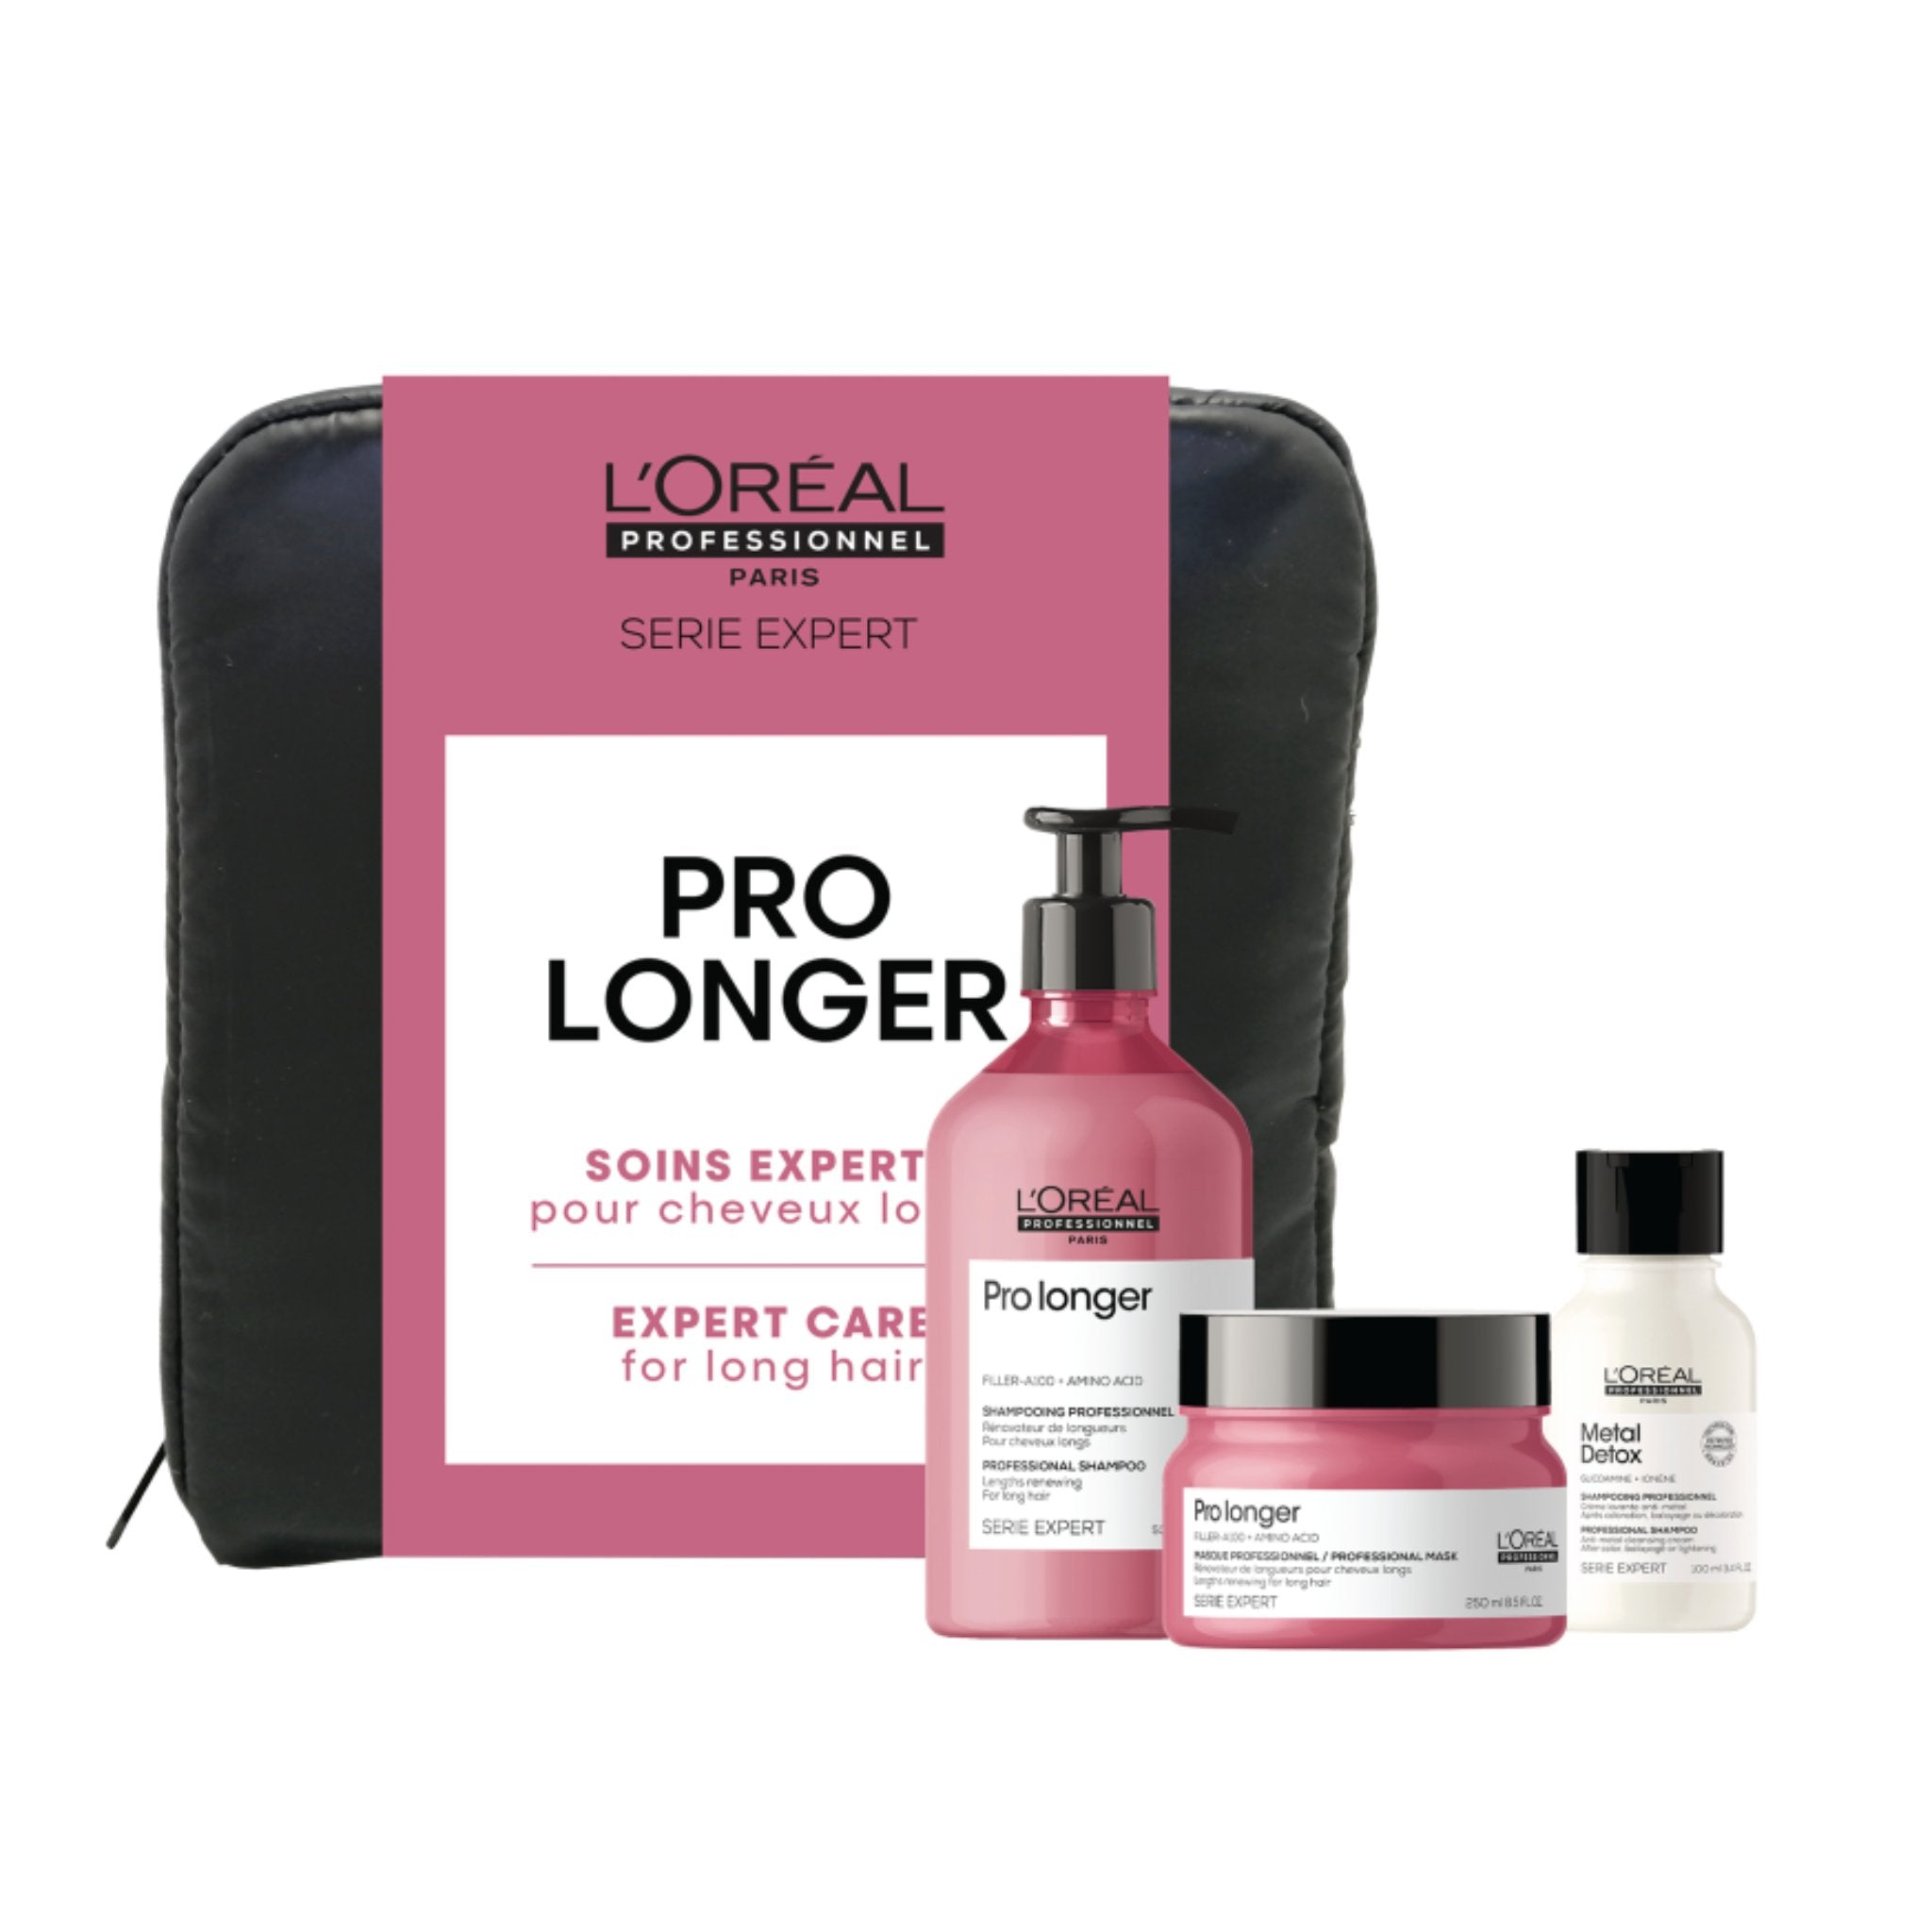 L'Oréal professionnel. Coffret Soin Longueur Pro longer - Concept C. Shop